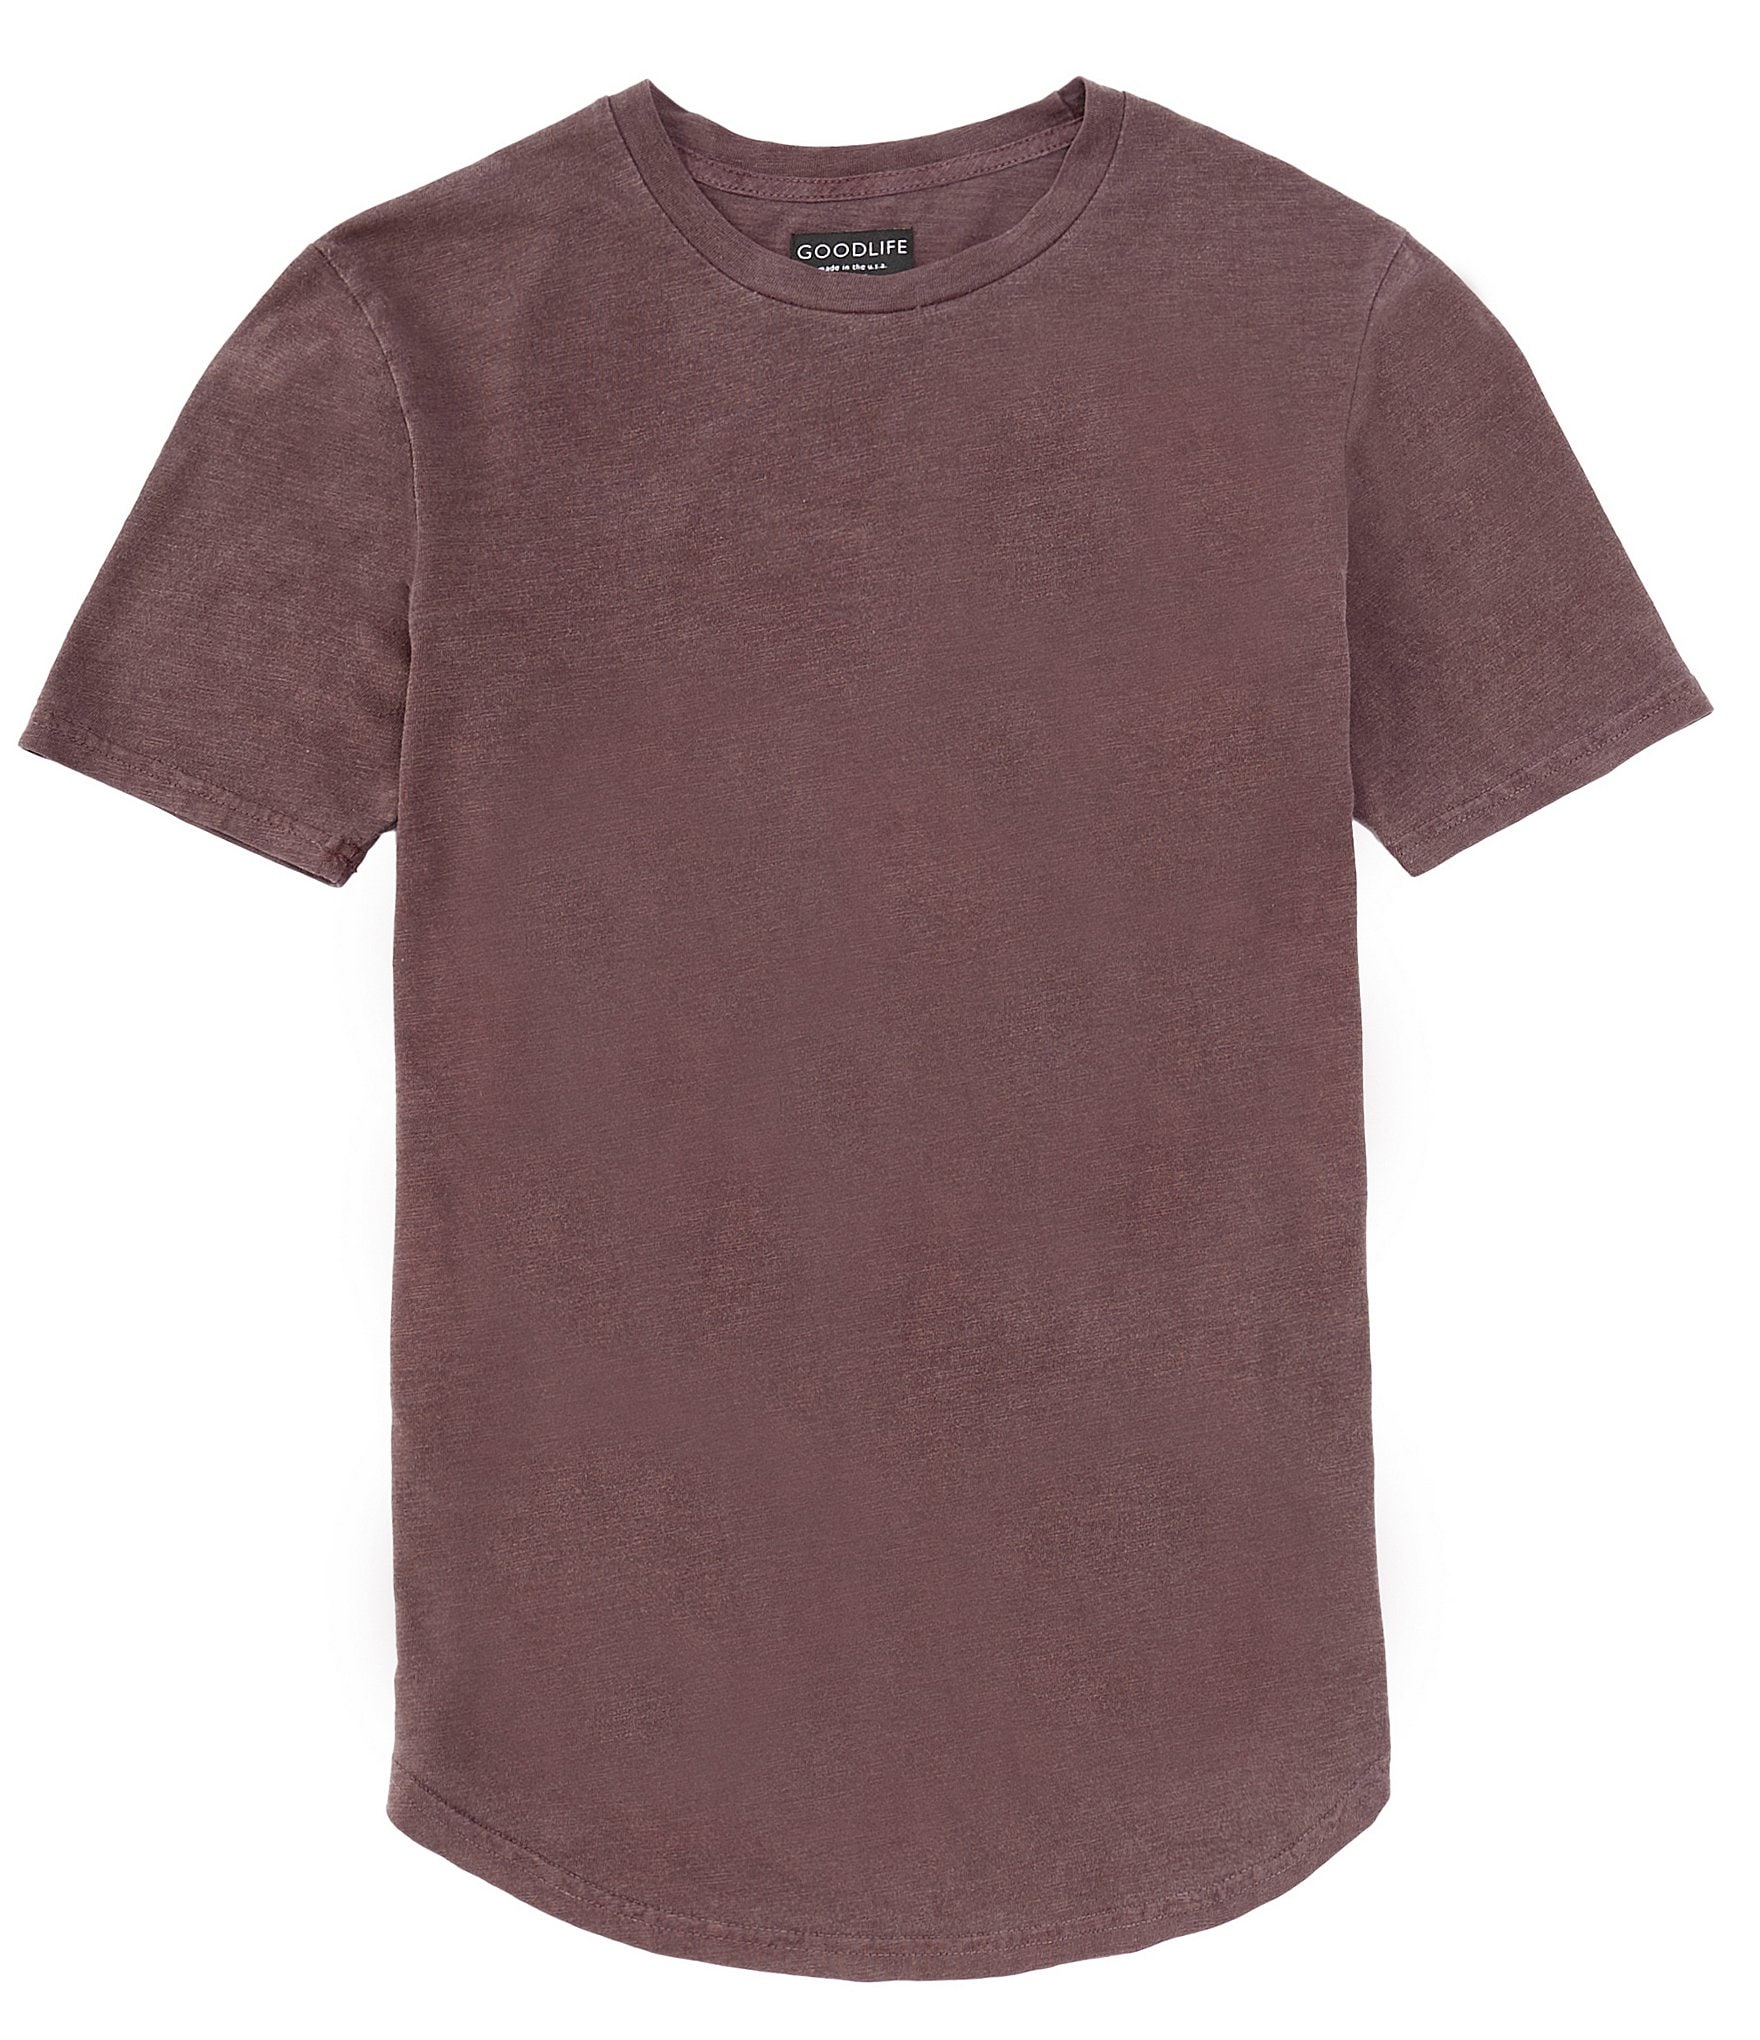 Roundtree & Yorke Long Sleeve Heavy Twill Camo Print Sport Shirt